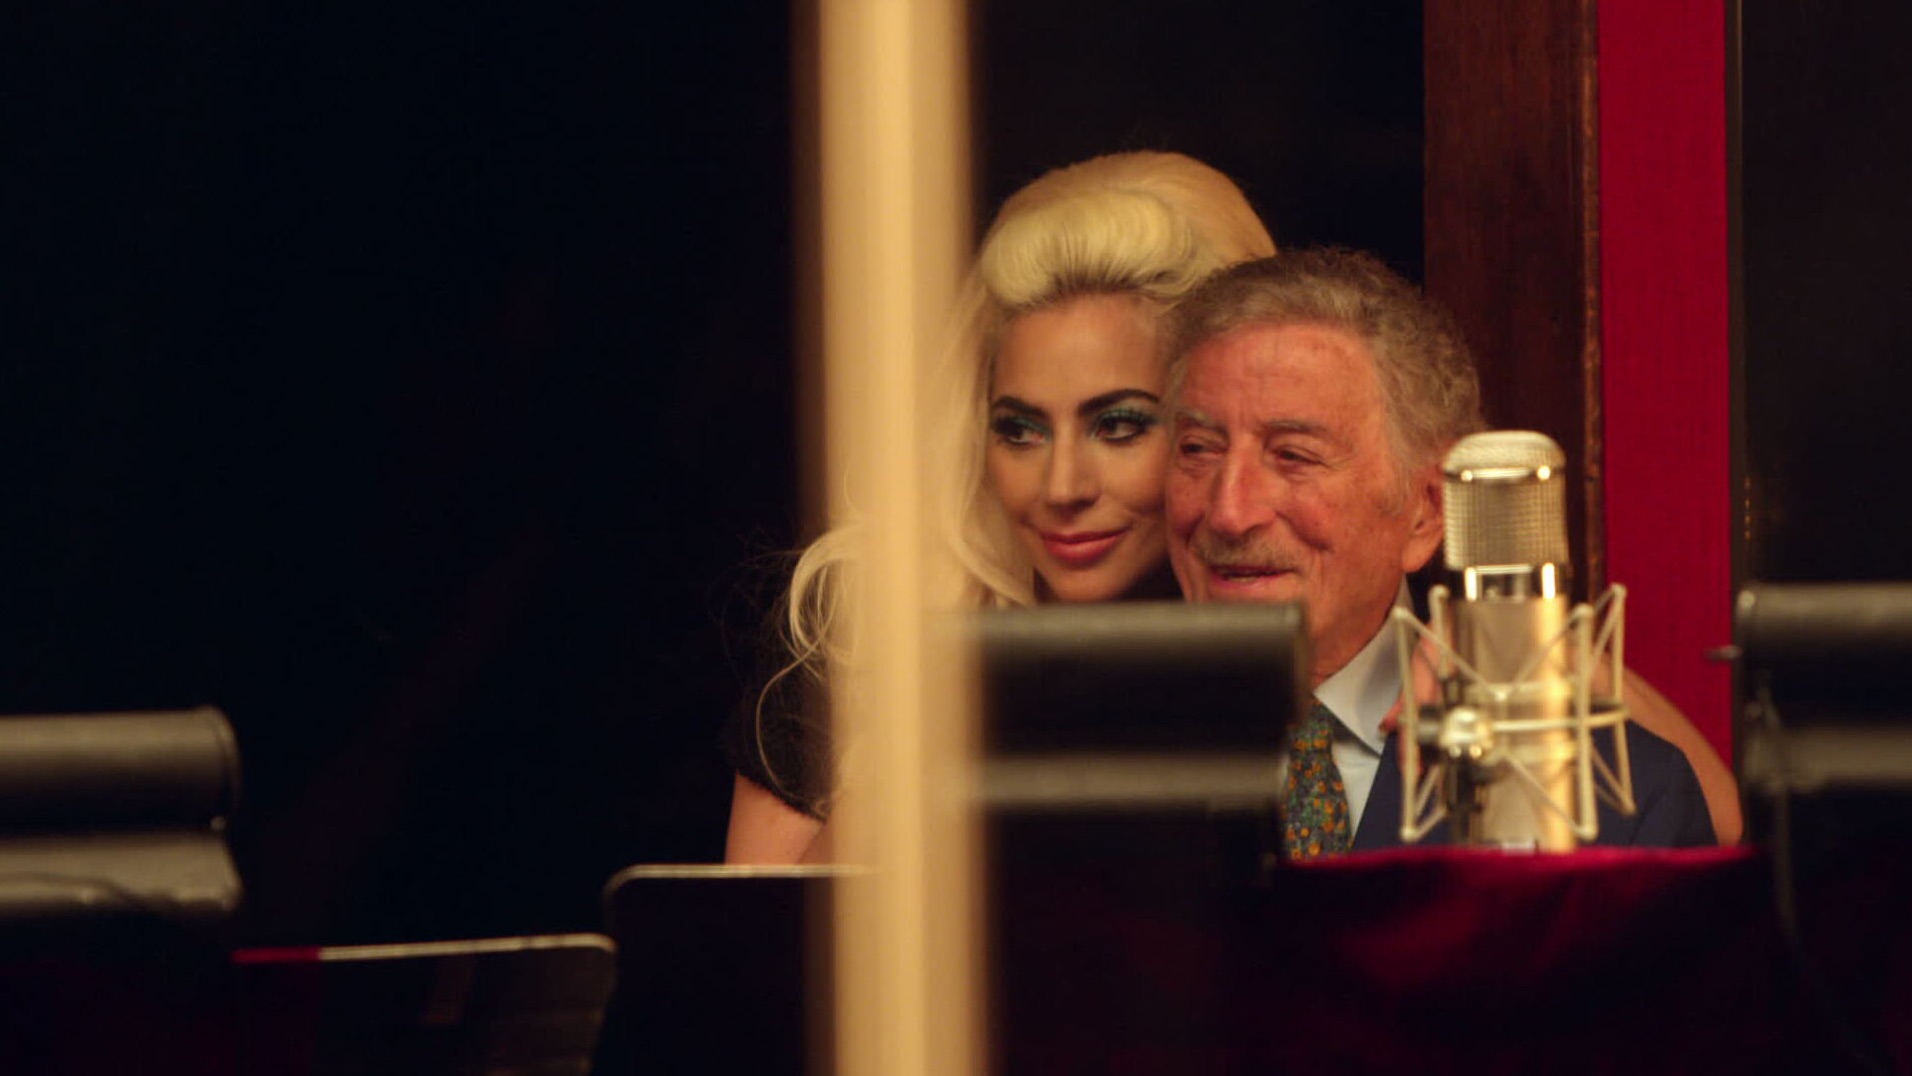 Tony Bennett y Lady Gaga